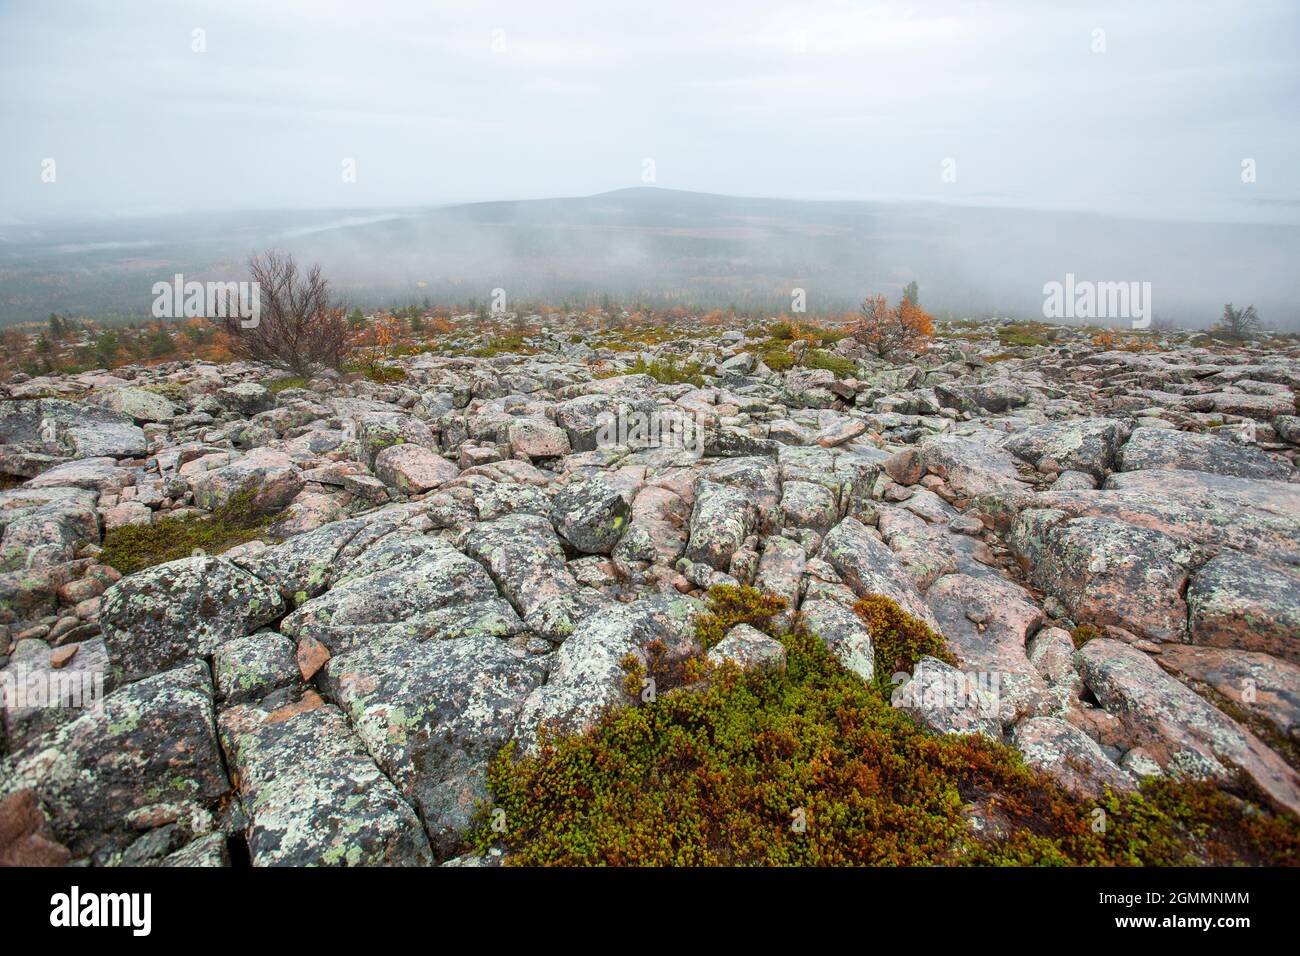 Autumnal foggy and stony landscape of Sallatunturi, Salla, Finland, Northern Europe Stock Photo